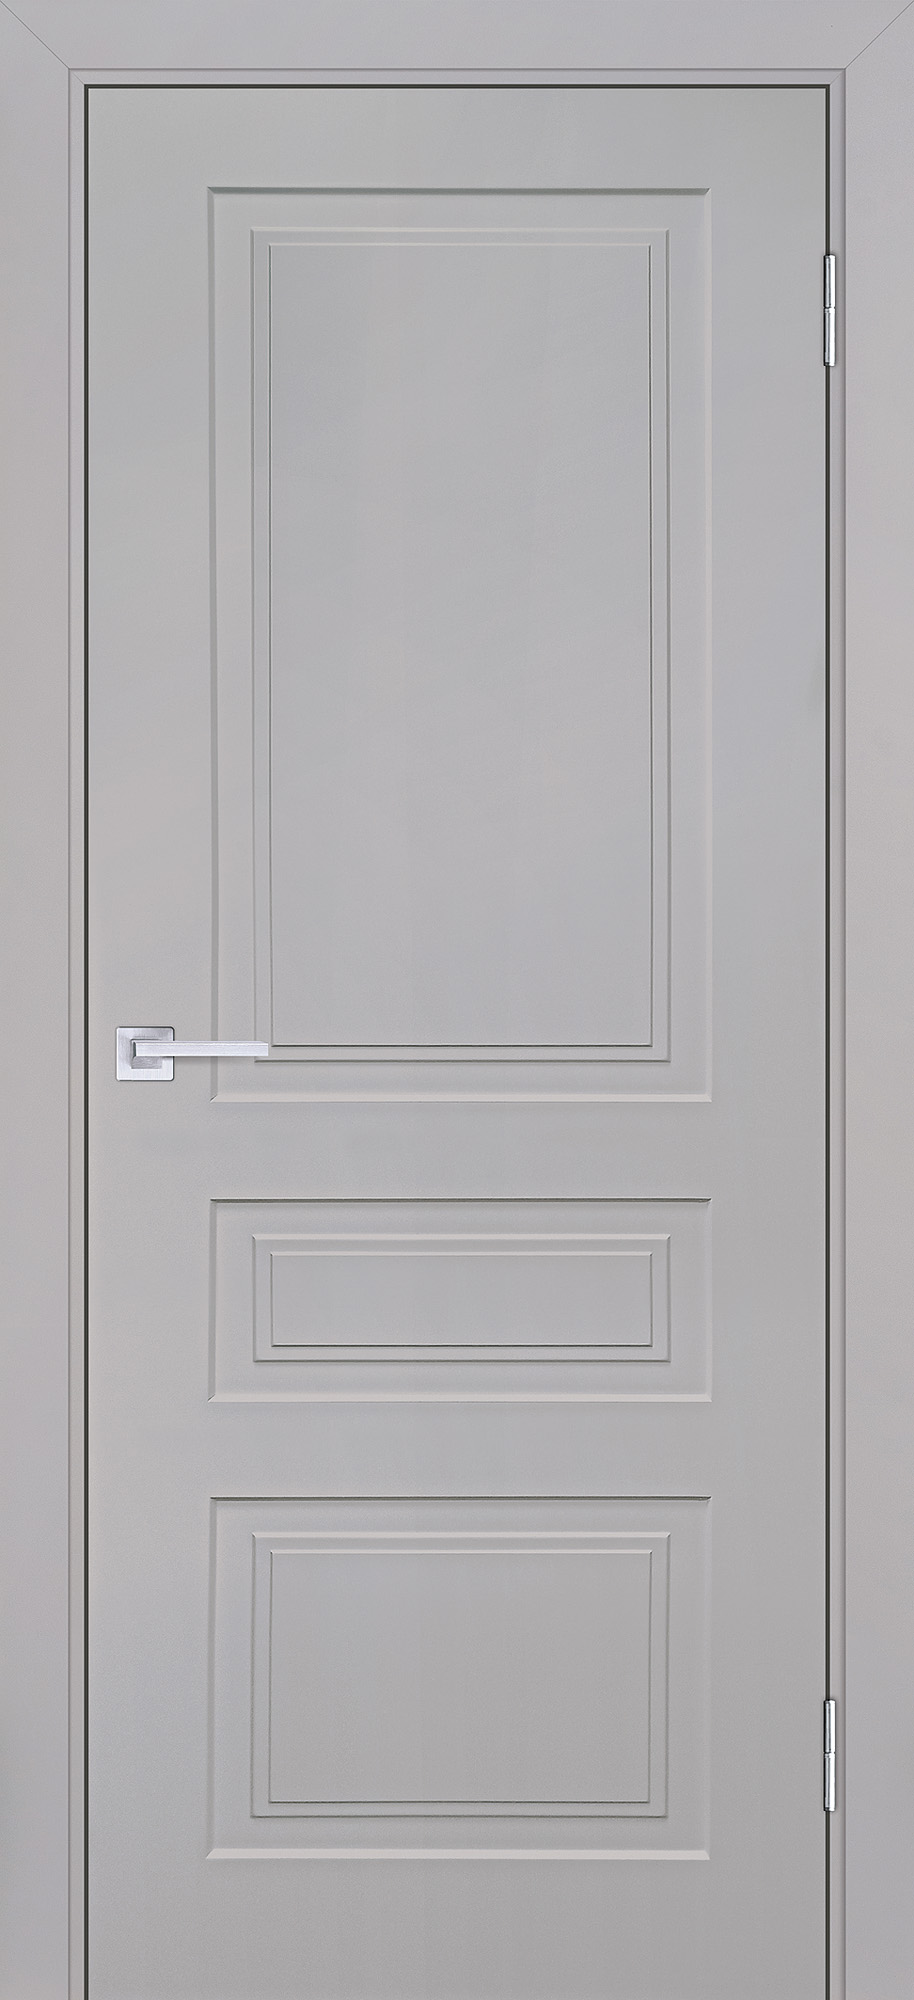 Двери крашеные (Эмаль) ТЕКОНА Смальта-Лайн 05 глухое Агат ral 7044 размер 200 х 60 см. артикул F0000093236